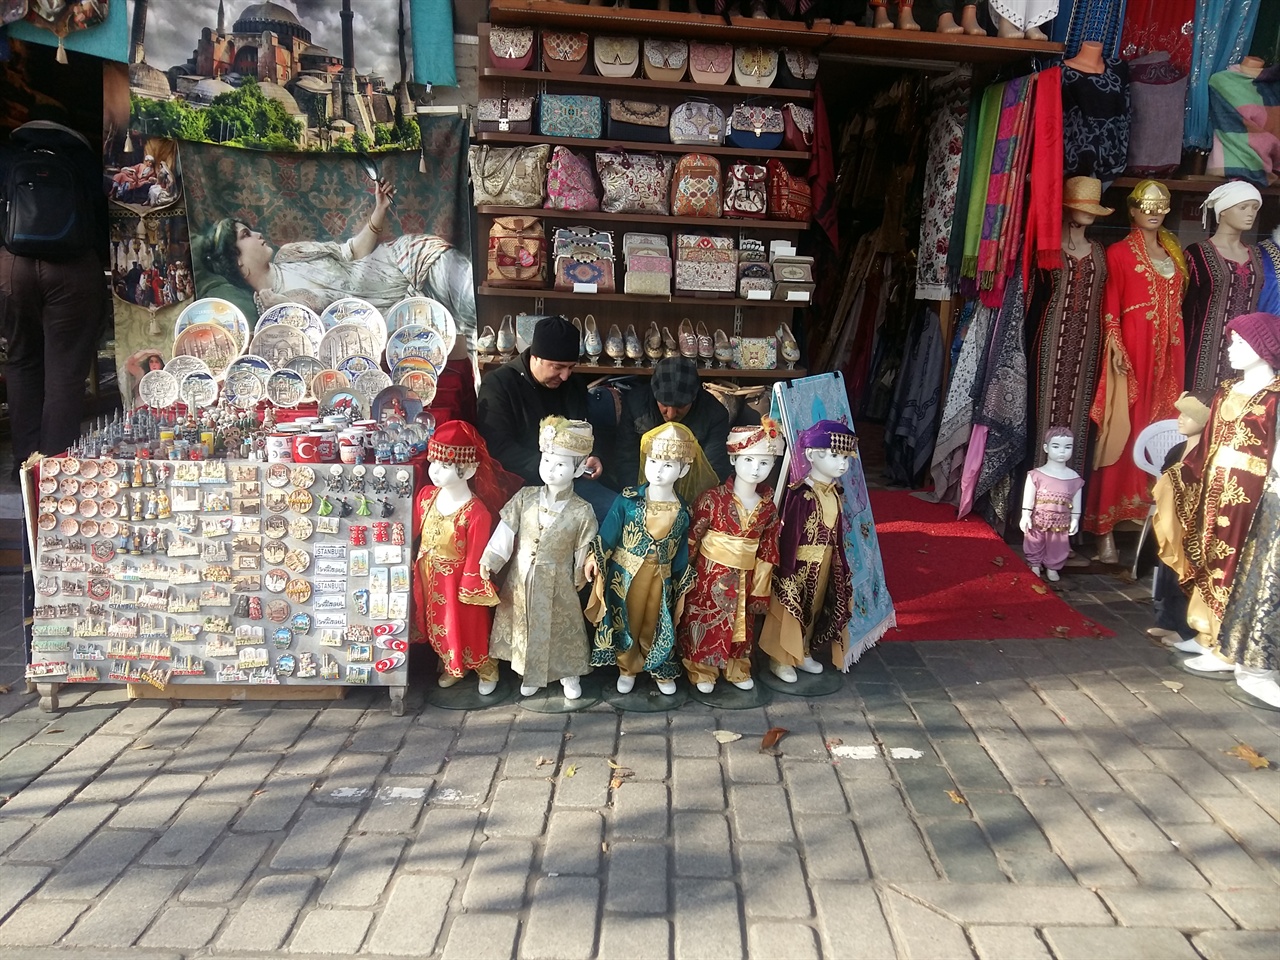 이스탄불의 상점에서는 알라딘의 램프에서 나온듯한 신비로운 물건들이 값싸게 팔리고 있었다.